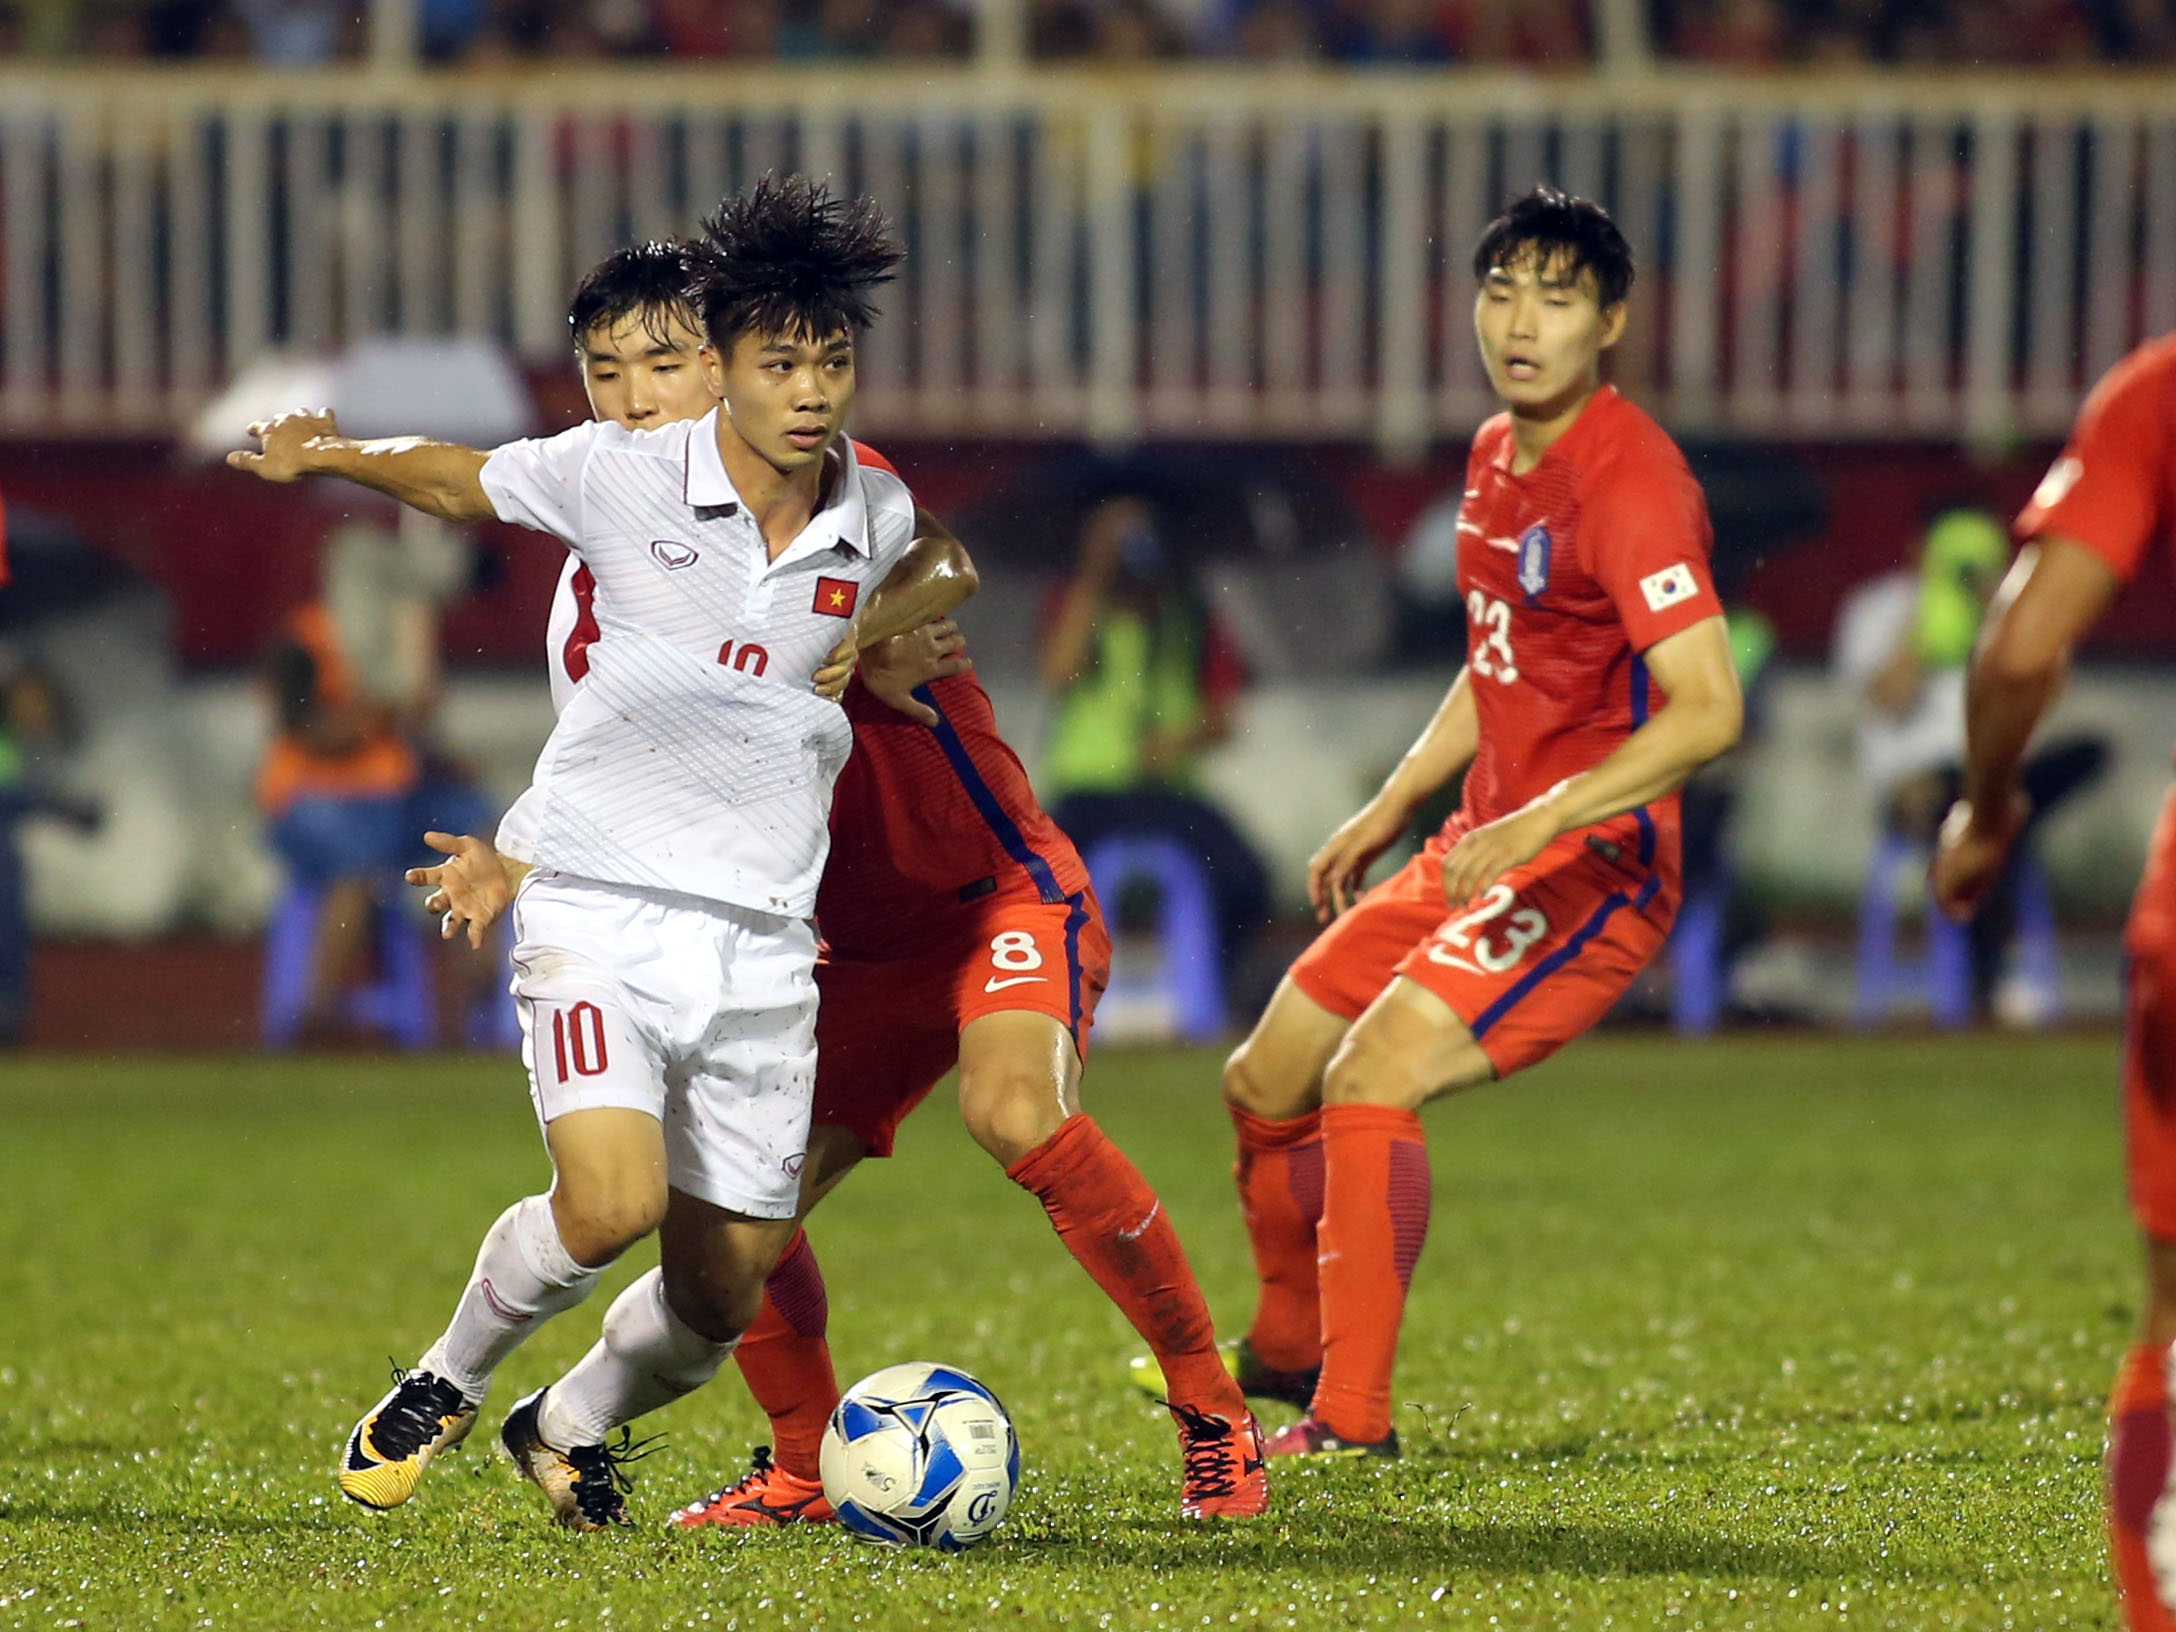  Tại VCK U-23 châu Á sắp tới, Công Phượng sẽ lại ghi bàn vào lưới U-23 Hàn Quốc như ở vòng loại? Ảnh: N.KHÔI